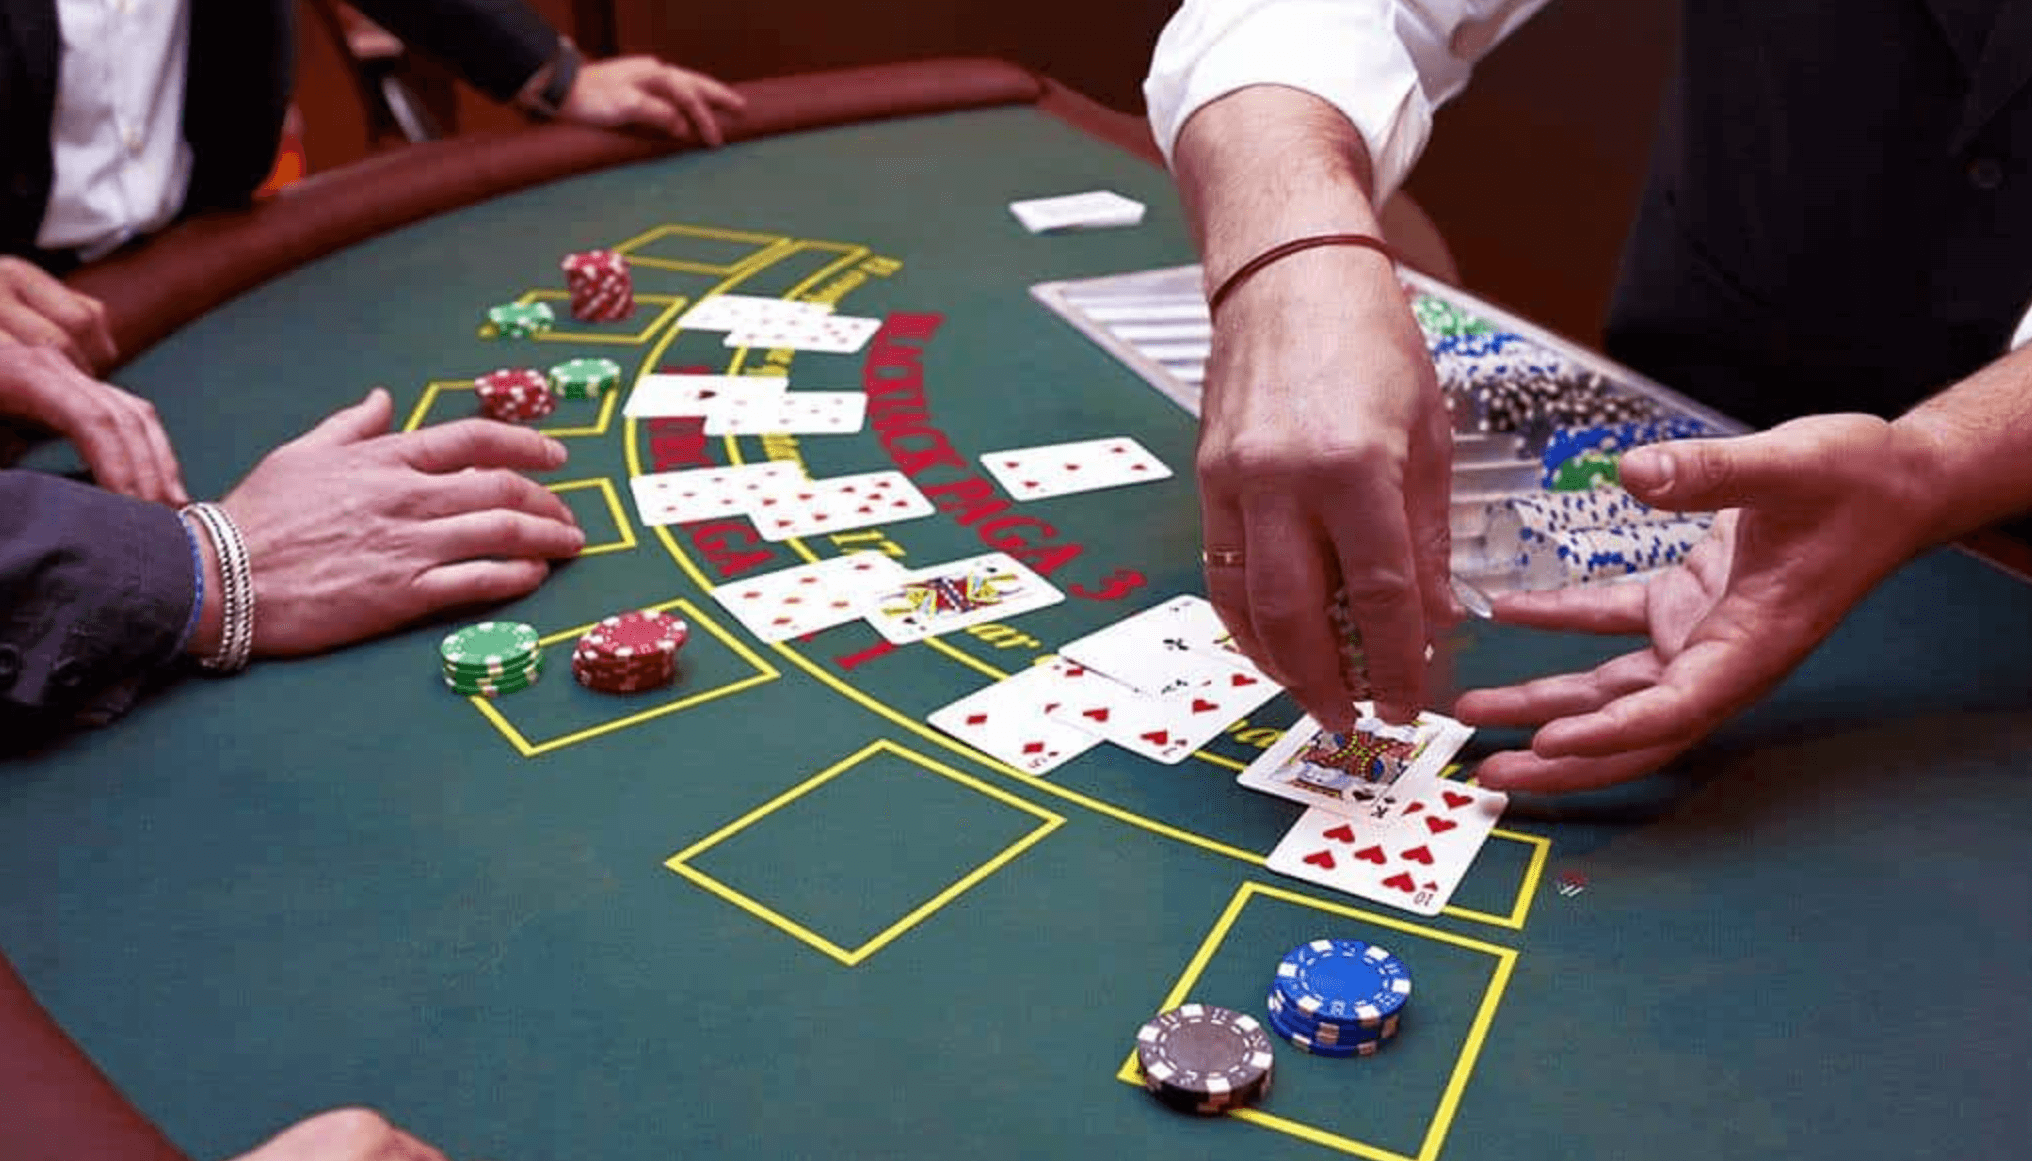 Casino blackjack variations poker